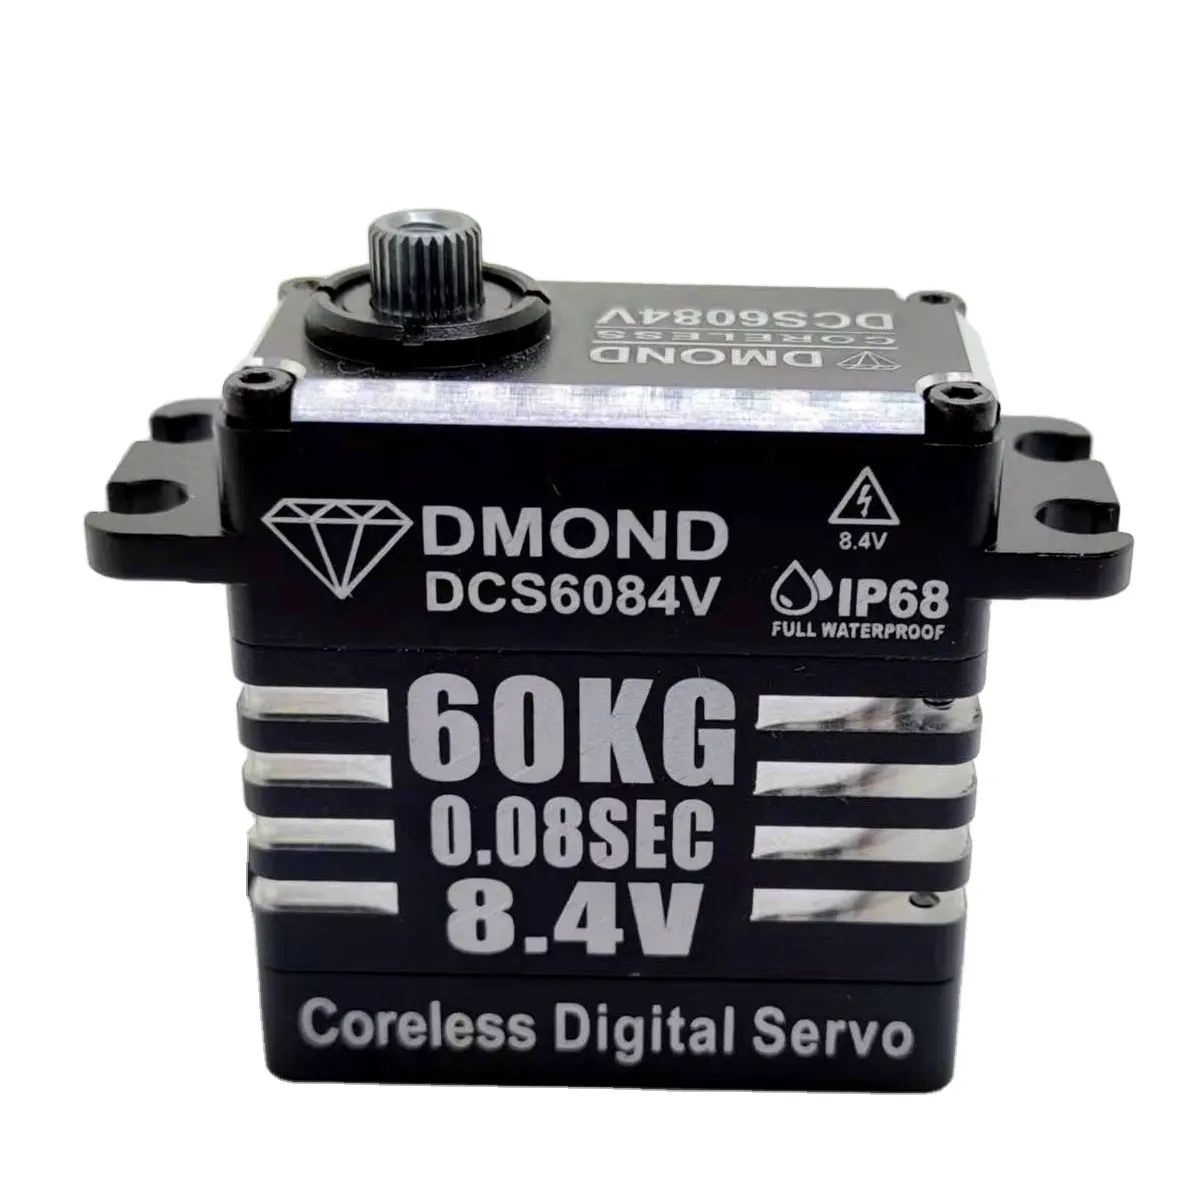 DMOND DCS6084V 60 кг 8,4 сек в без сердечника цифровой водонепроницаемый сервопривод MONSTER KILLER сервопривод SB2292SG A86BHMW